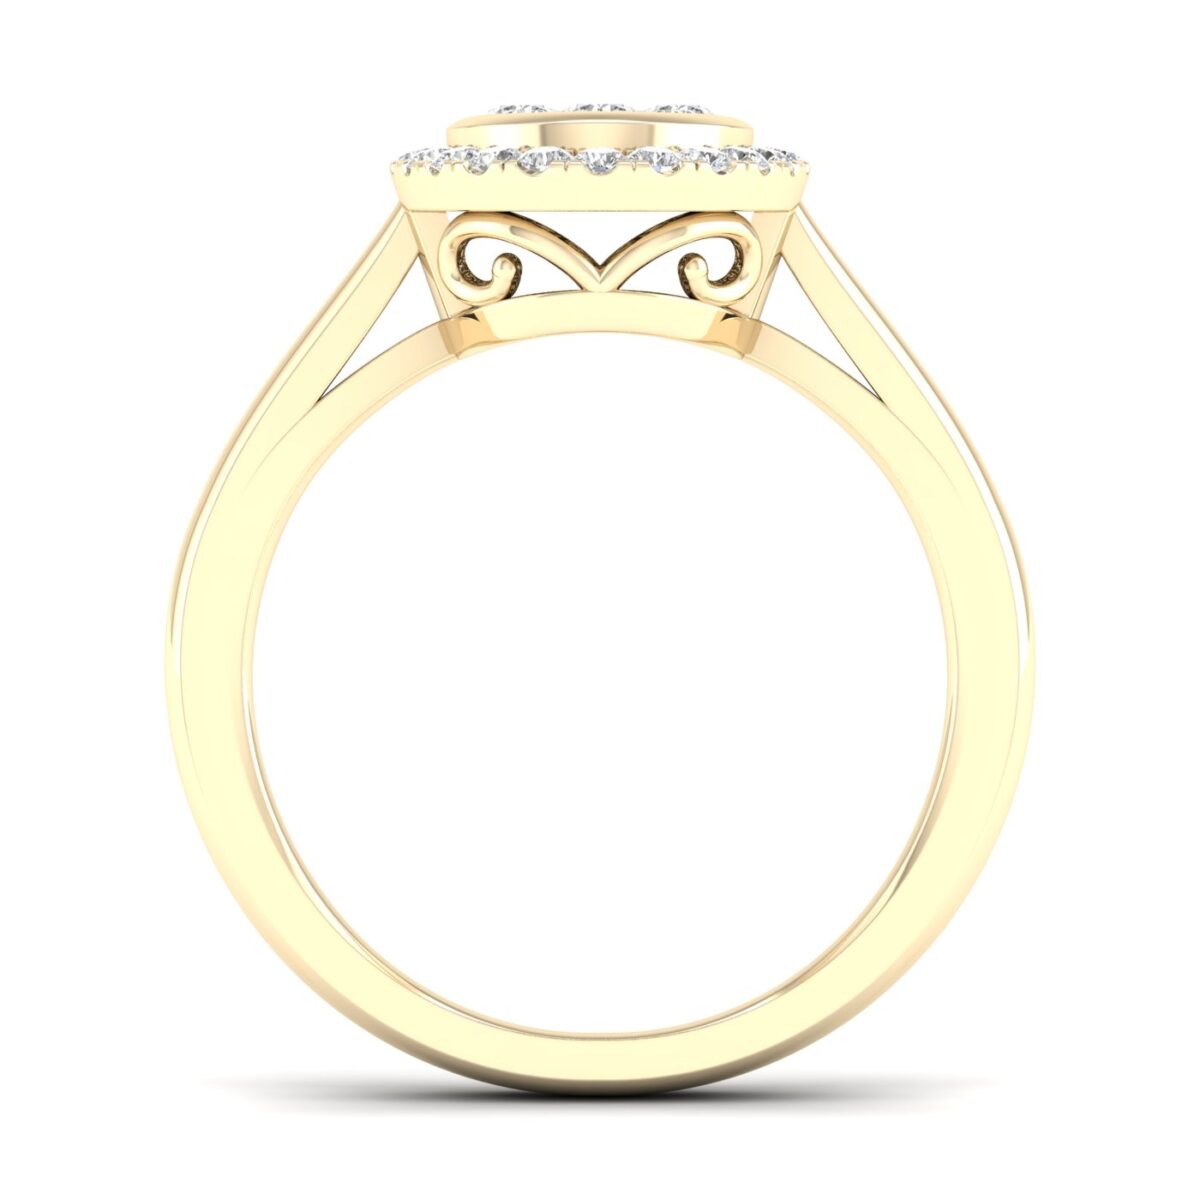 Kullast sõrmus teemantidega 0,25 ct. Kood: 54hh